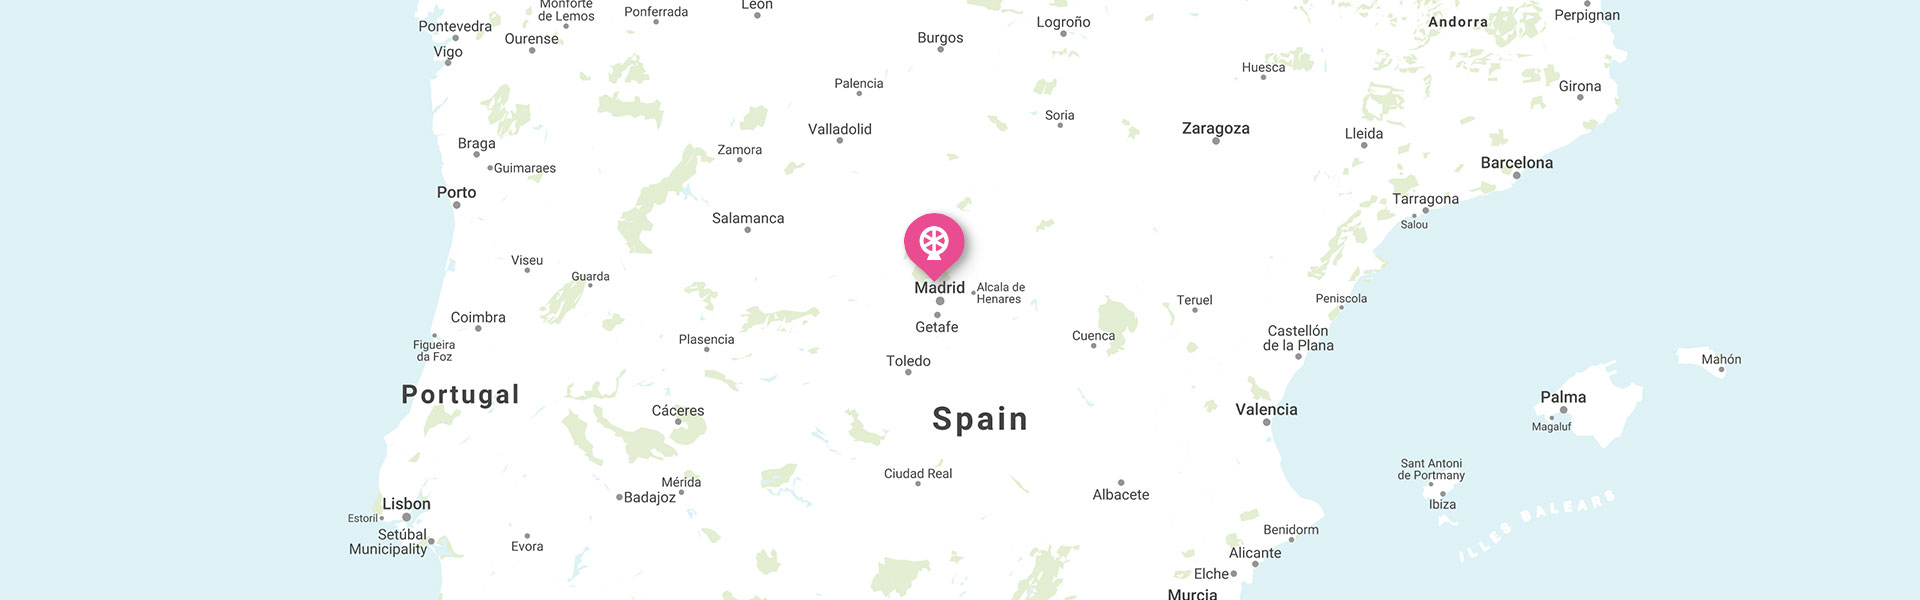 map of Nickelodeon Land at Parque de Atracciones de Madrid